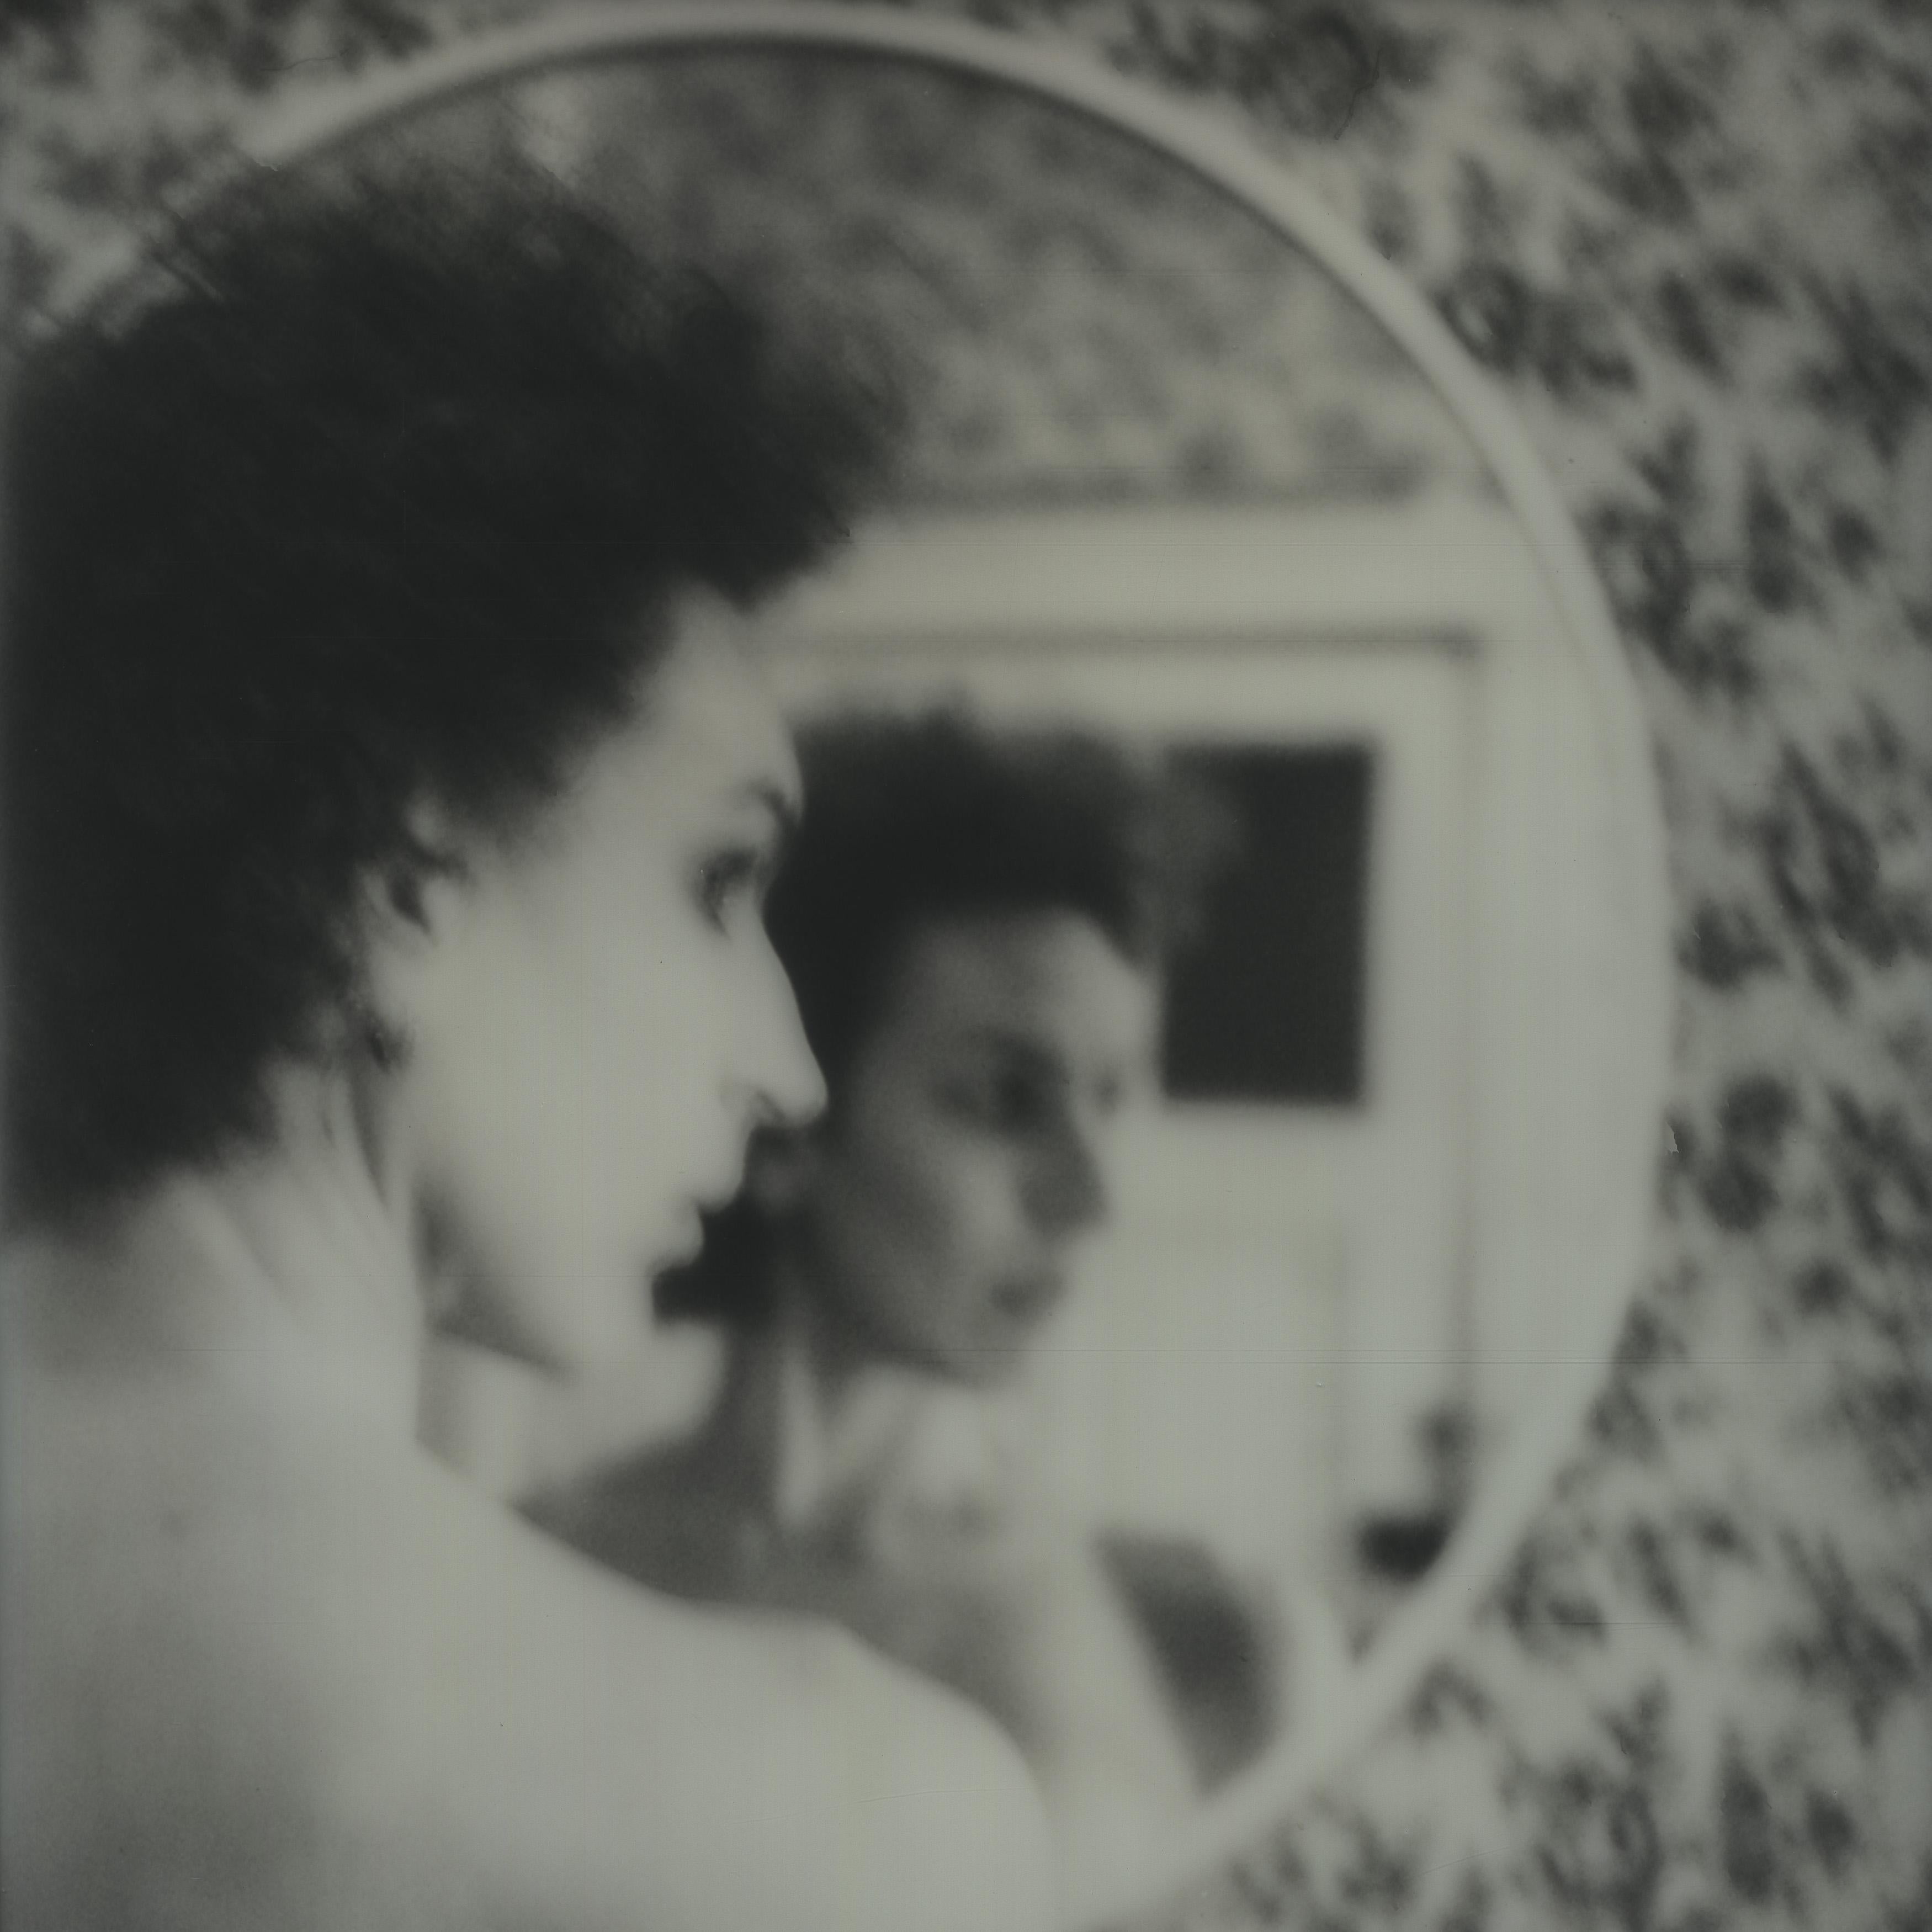 Kirsten Thys van den Audenaerde Black and White Photograph - Blurred - Contemporary, Nude, Women, Polaroid, 21st Century